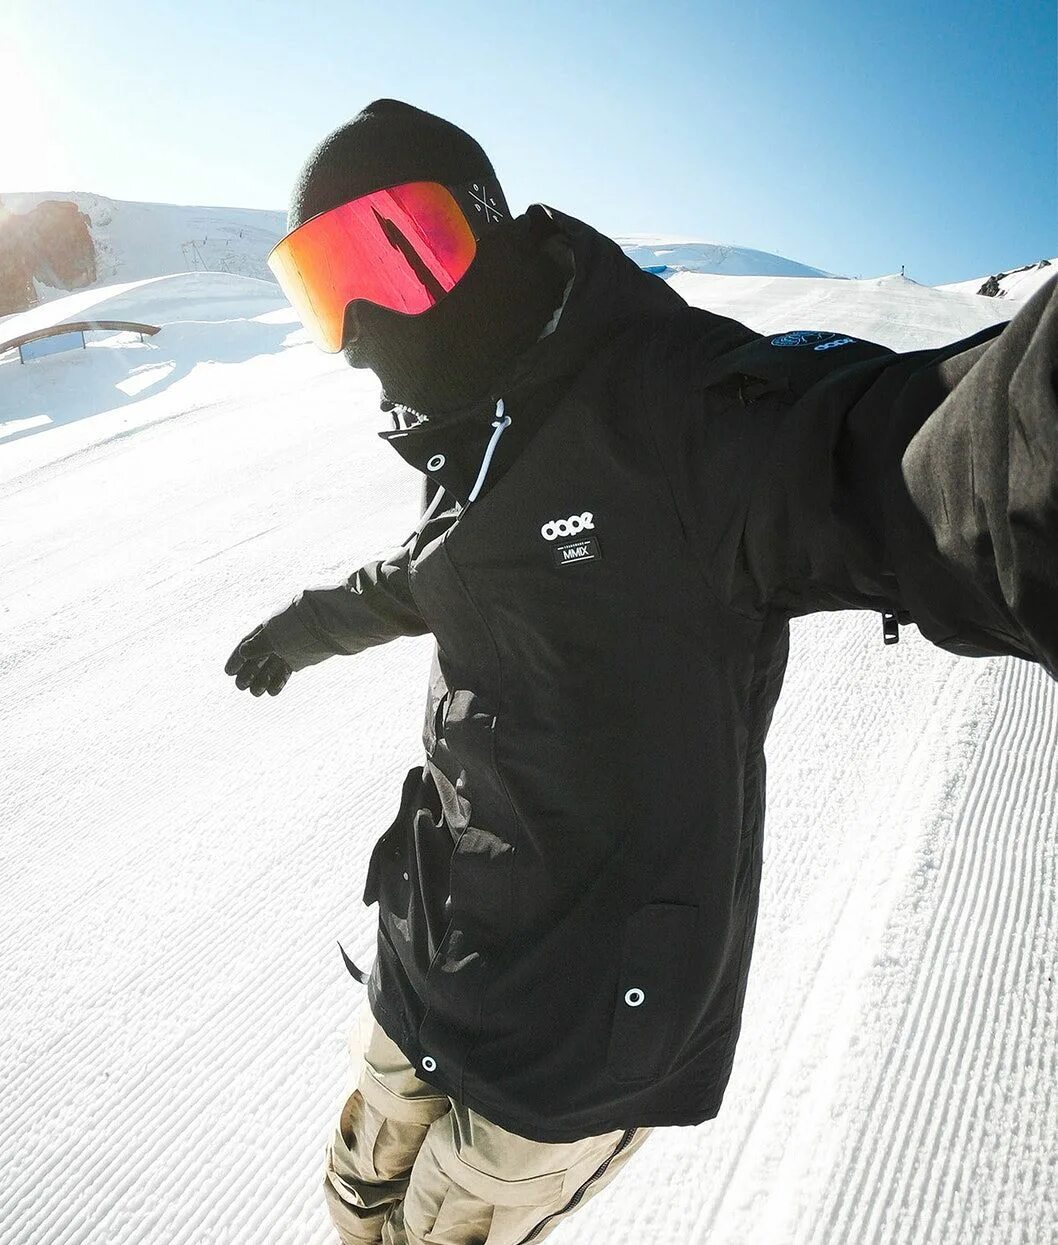 Сноубордическая куртка Dope. Стиль одежды сноубордиста. Мужской сноубордический стиль. Парень на снегоборде. Сноуборд одежда черная